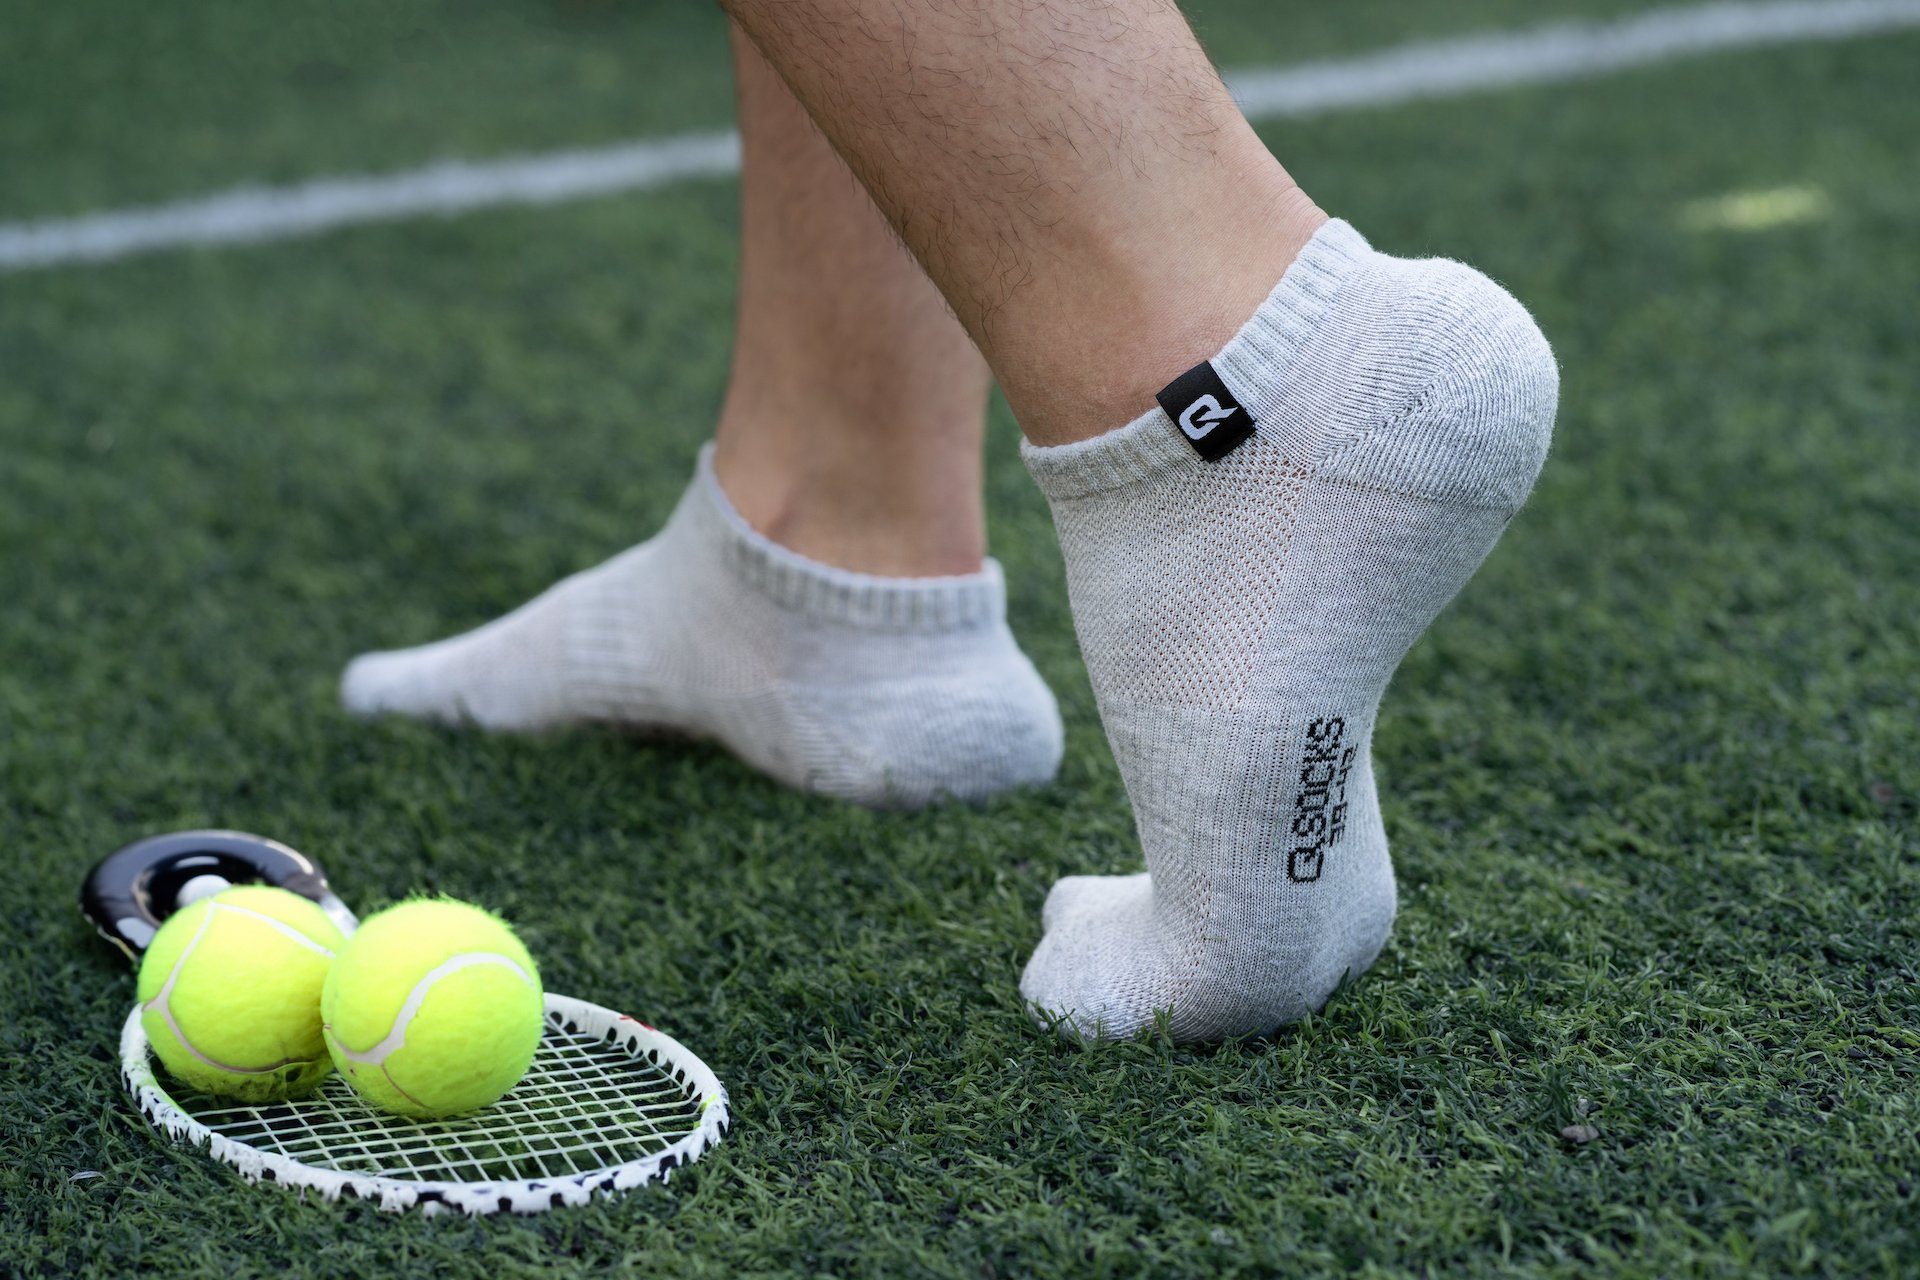 QSOCKS Sneakersocken Hochwertige Baumwolle Sohle Socken 6 & für und Qualität Herren Paar) Weiß (Packung, gepolsterte Damen Zehen